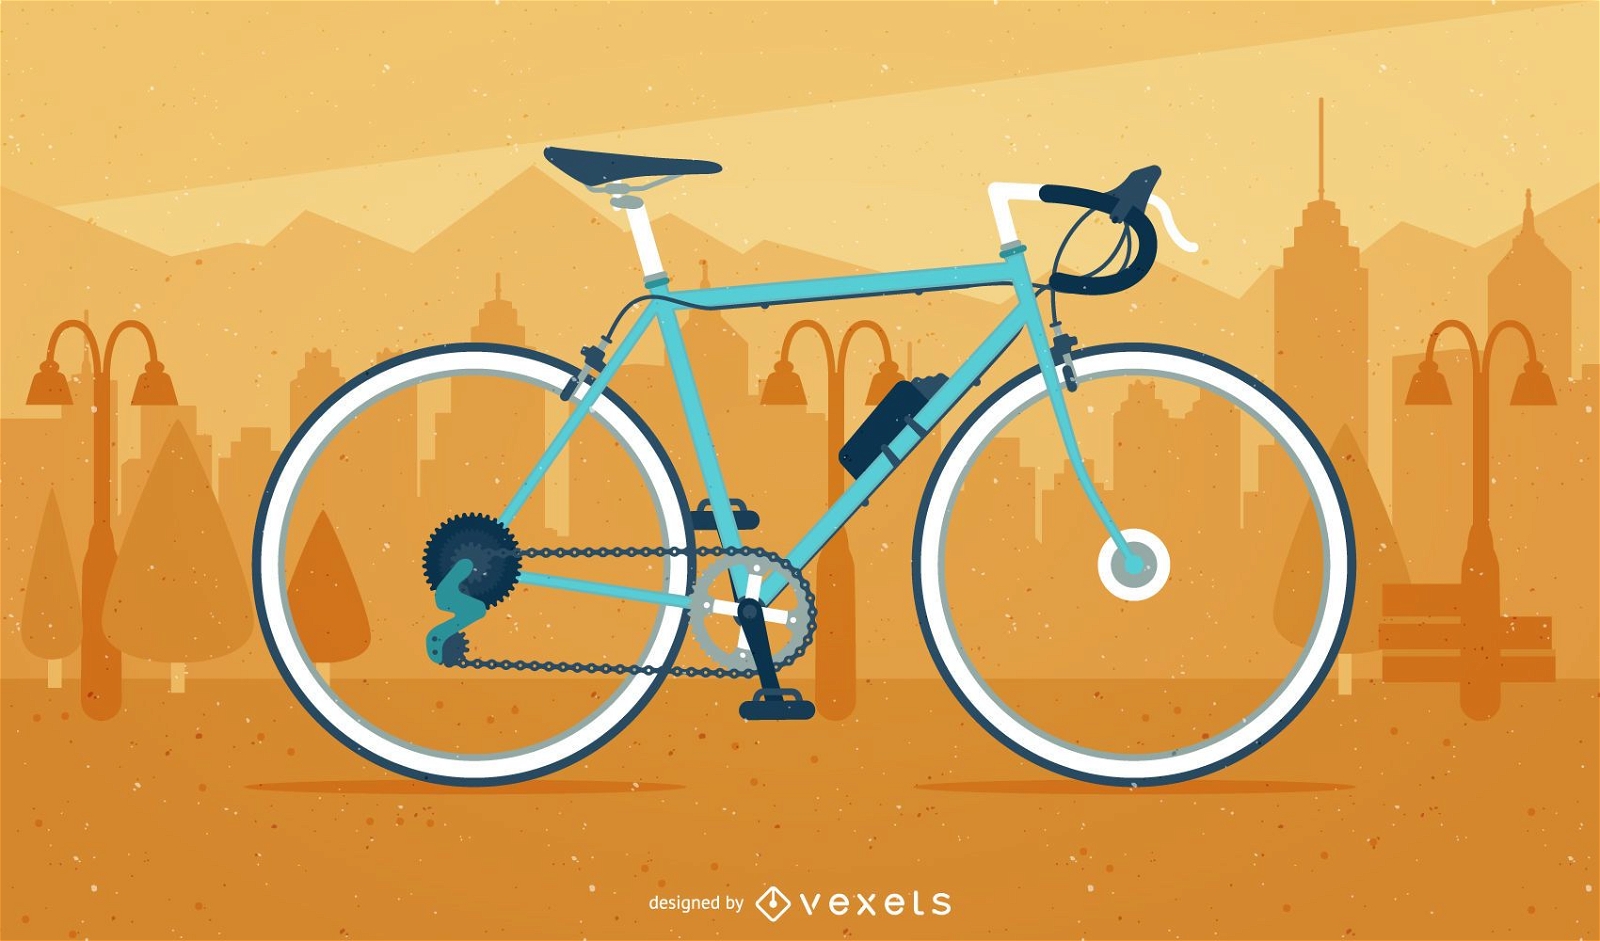 Bicicleta ilustrada em uma paisagem urbana